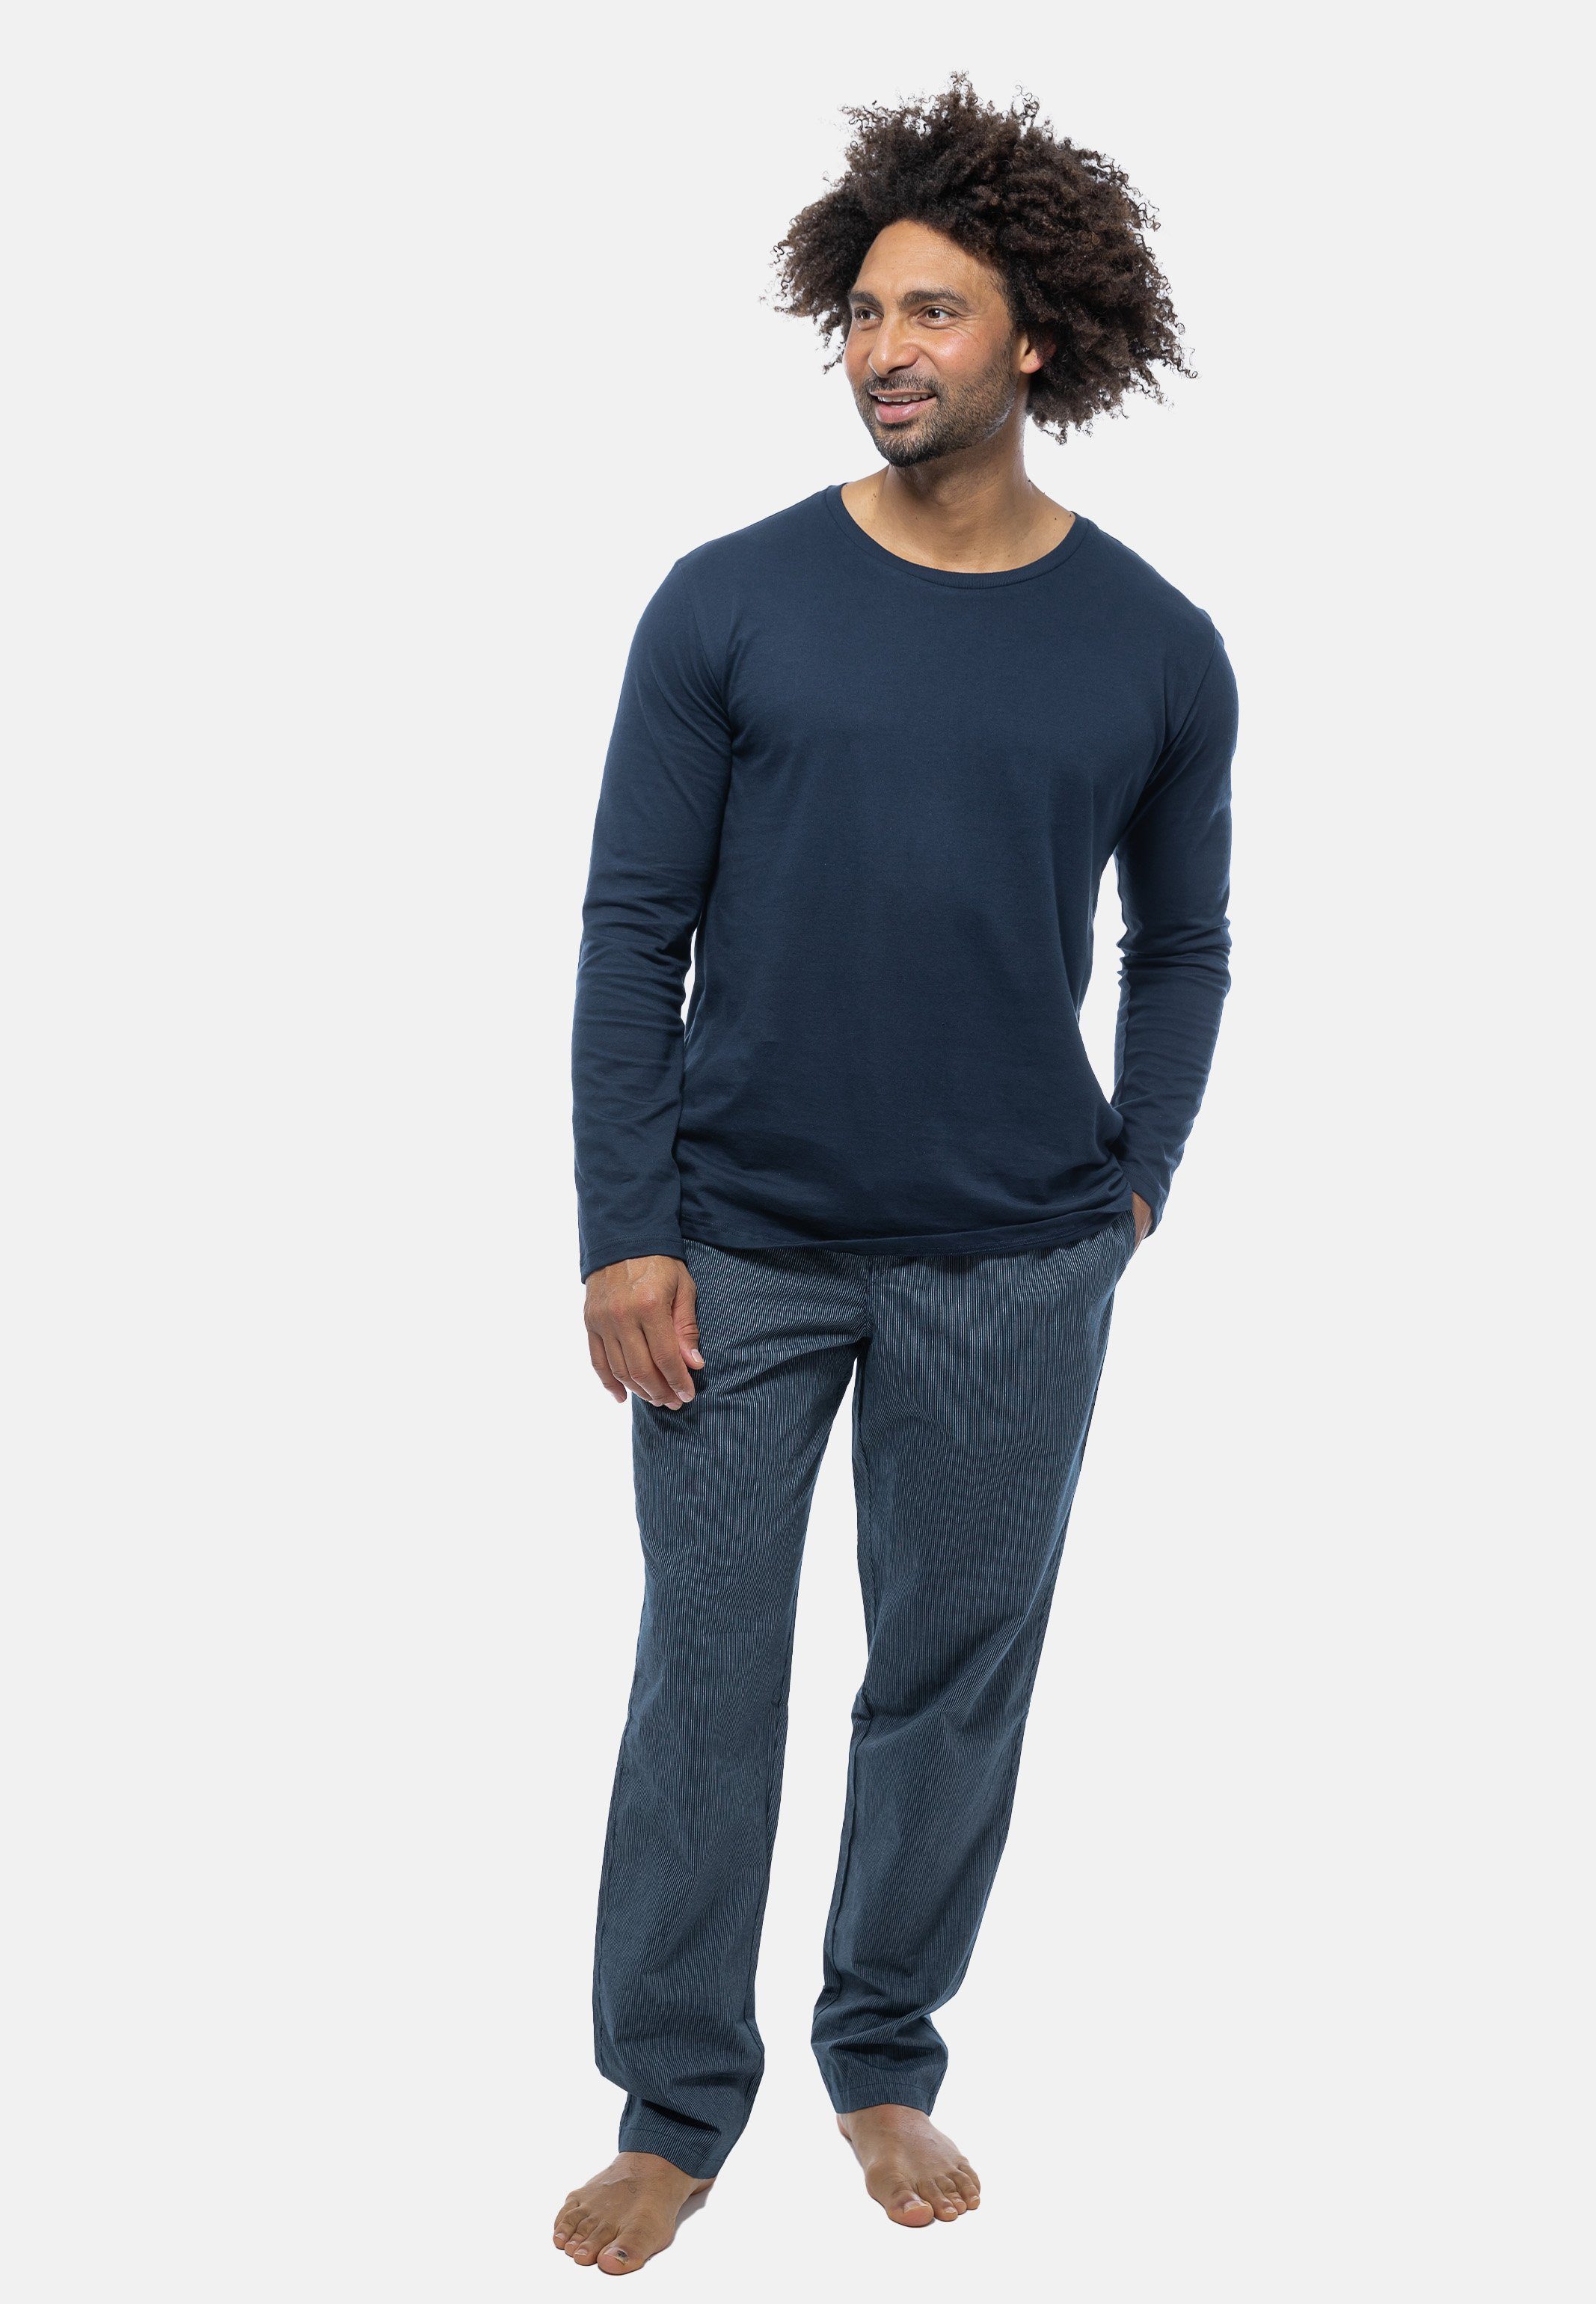 (Set, Schiesser tlg) 2 Blau - Pyjama - Schlafanzug Rundhals-Ausschnitt mit Mix gemustert Baumwolle Langarm-Shirt